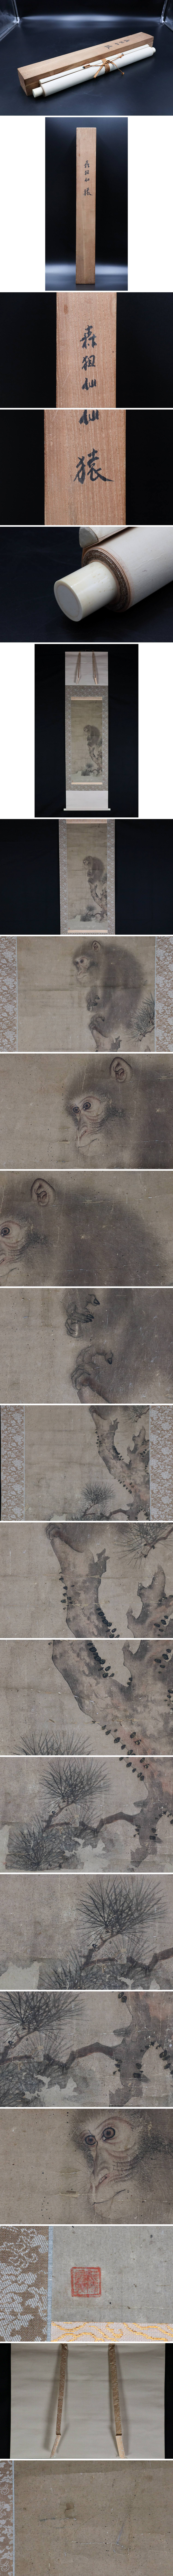 【保証付き】江戸期日本画家 森狙仙「猿図」紙本掛軸 合箱 森派の祖 名家蔵収蔵品 5F28.15C 花鳥、鳥獣